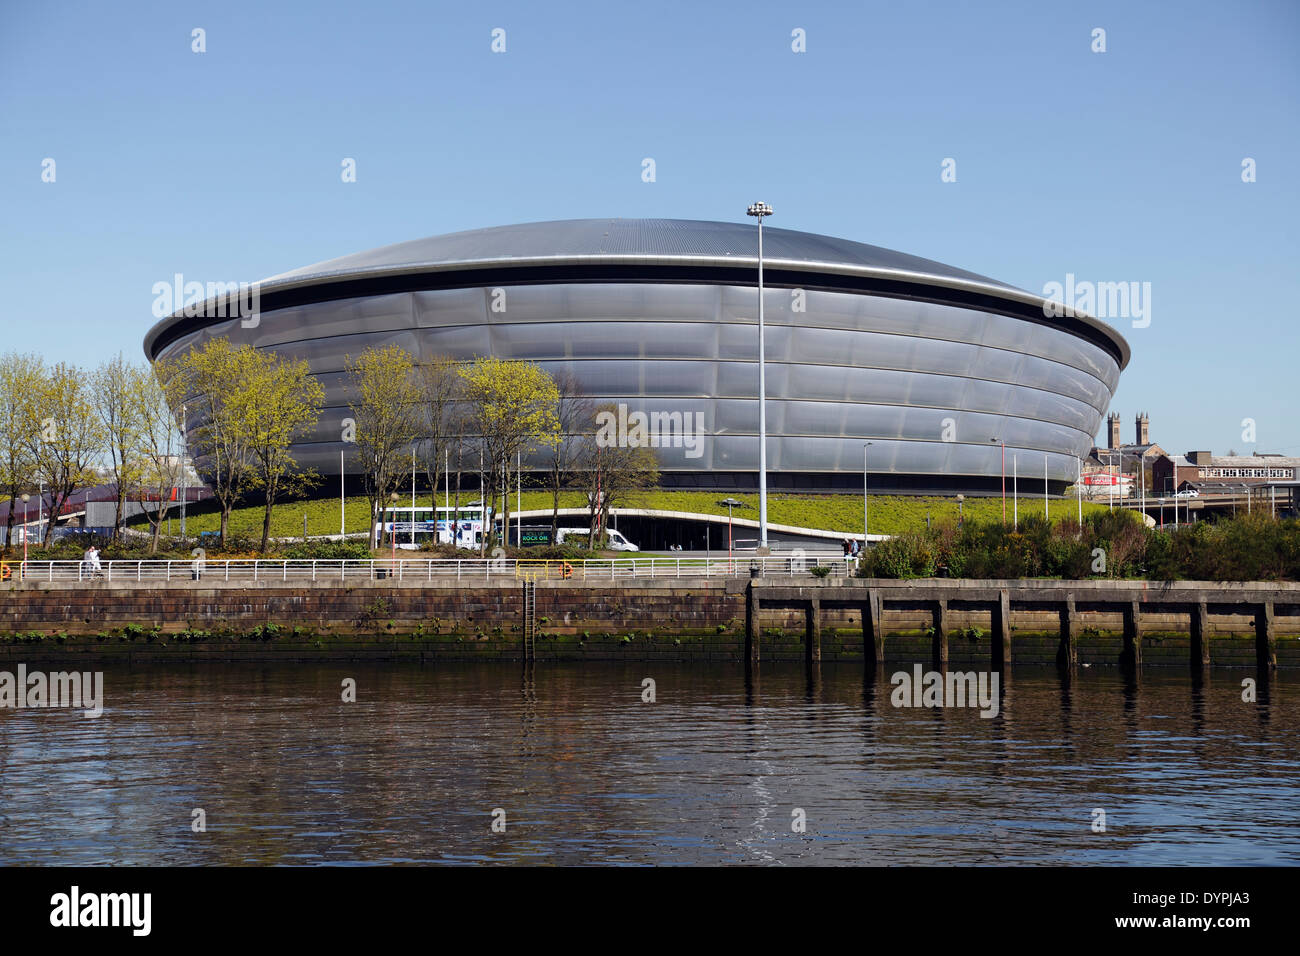 La SSE Hydro Arena sul SEC Centre di Glasgow, Scozia, Regno Unito Foto Stock